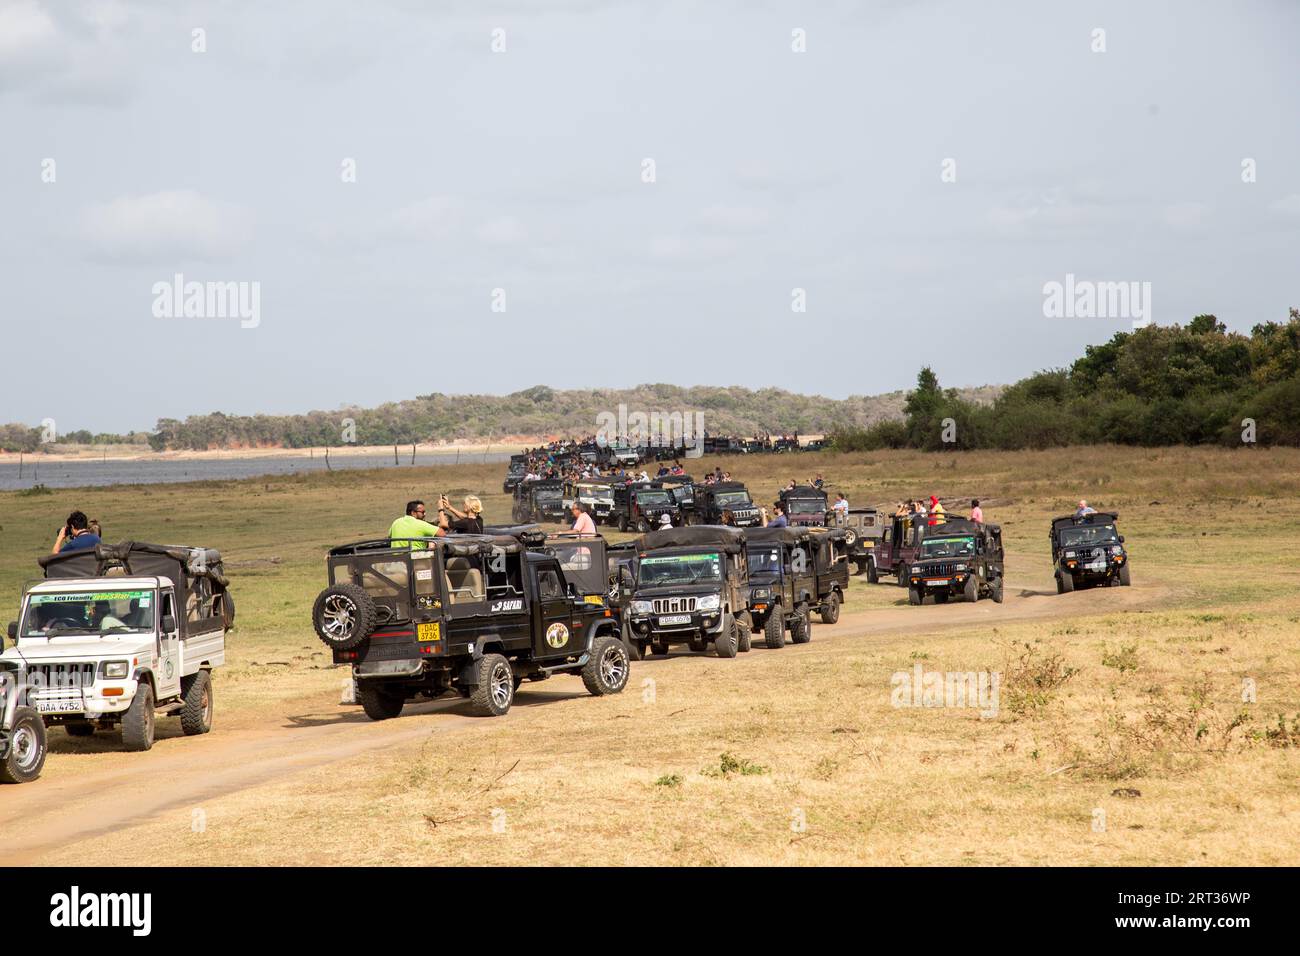 Parc national de Kaudulla, Sri Lanka, 16 août 2018 : Grande rangée de jeeps avec des touristes à l'intérieur du parc national de Kaudulla Banque D'Images